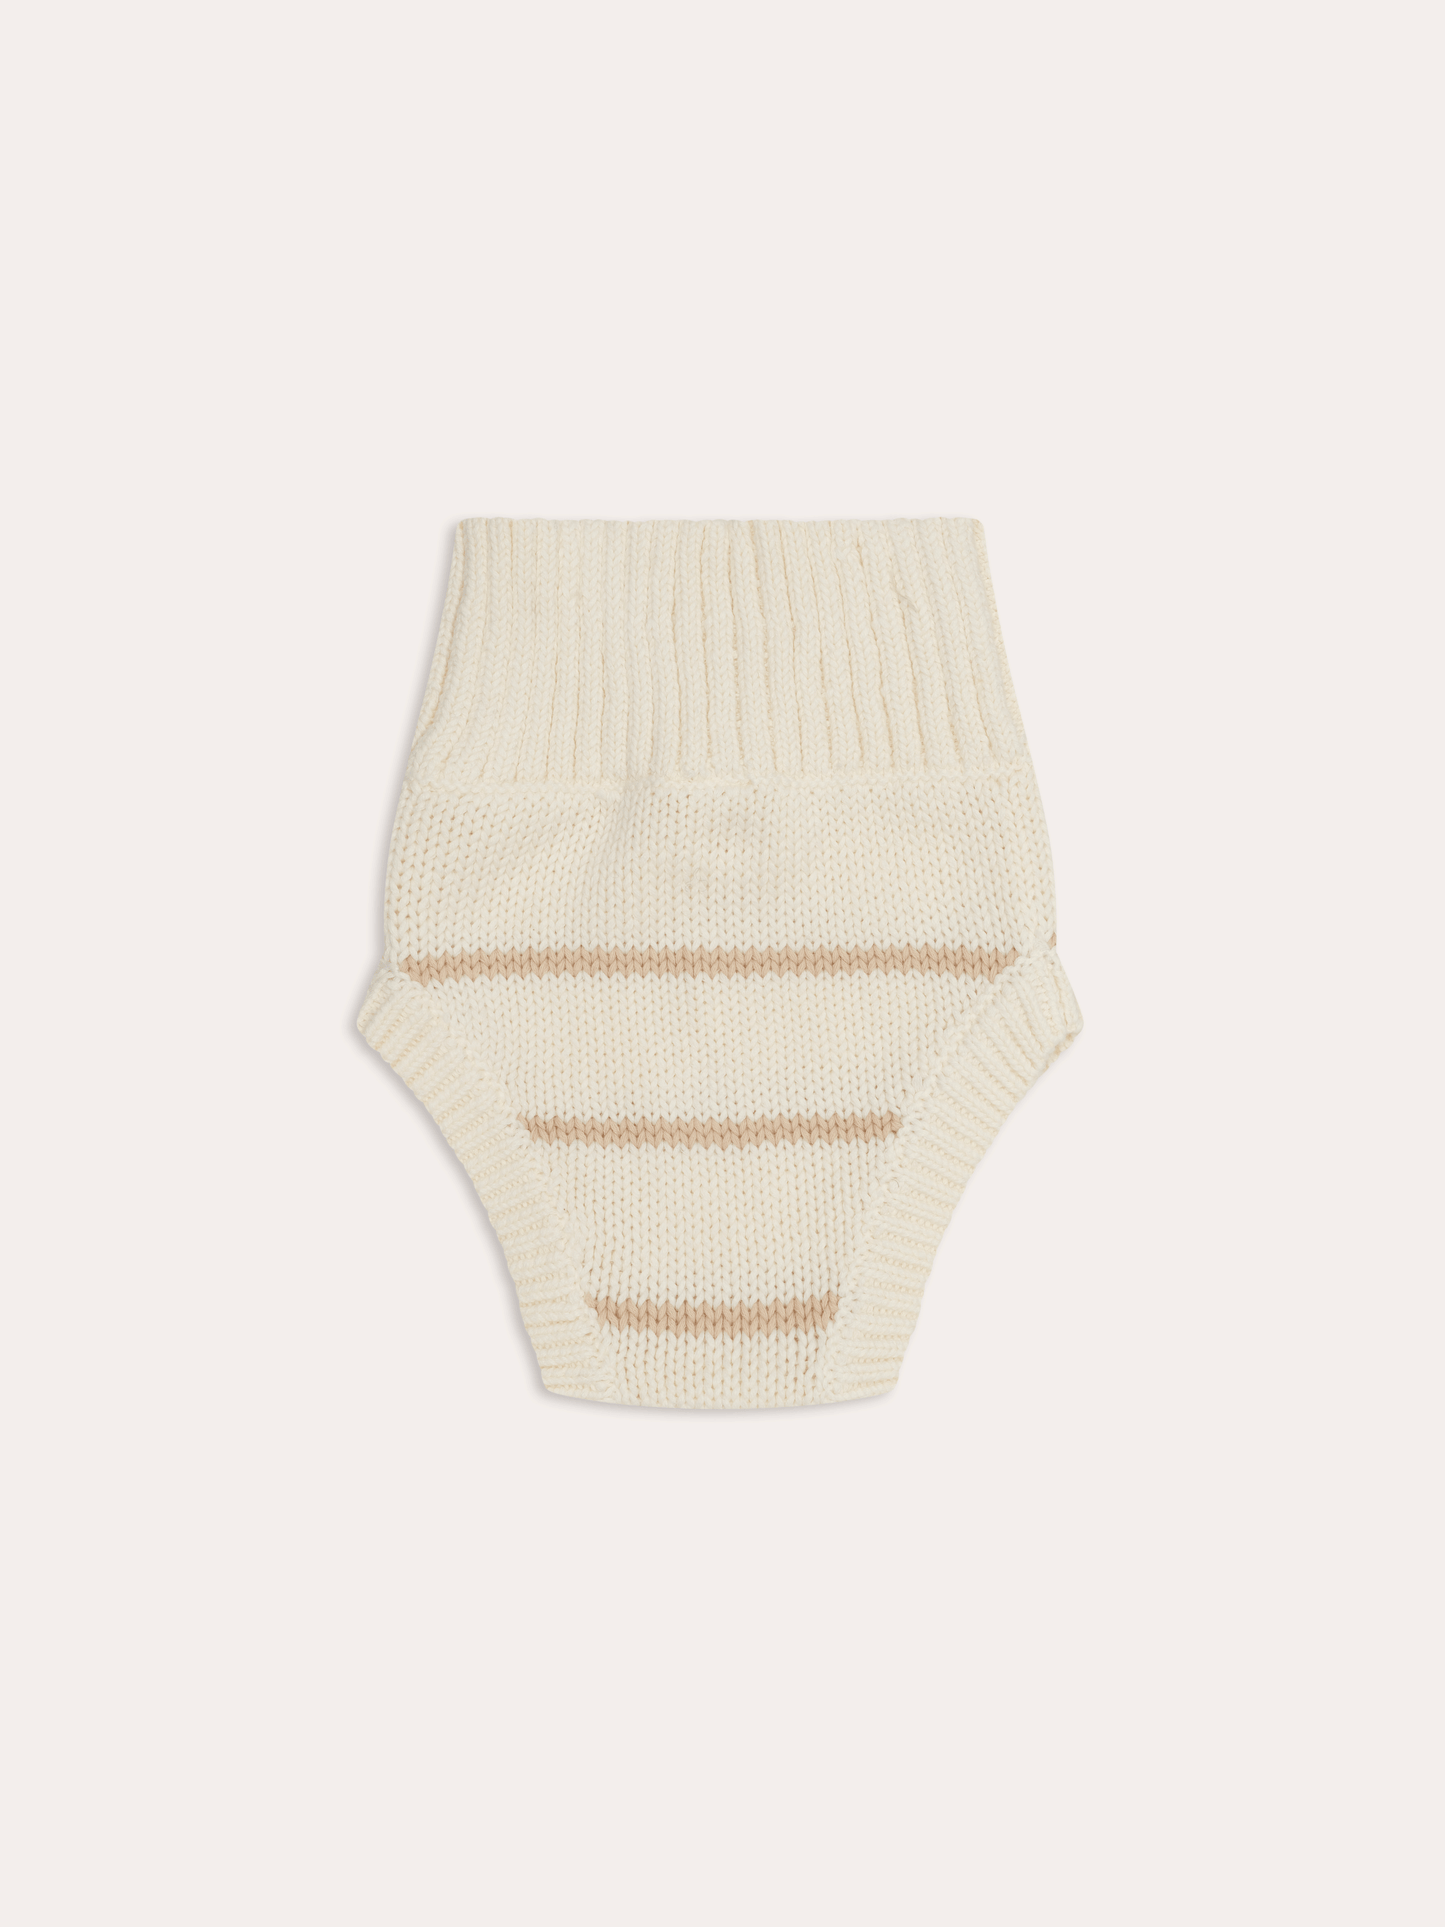 Dusky Knit Bloomer | Sand Stripe